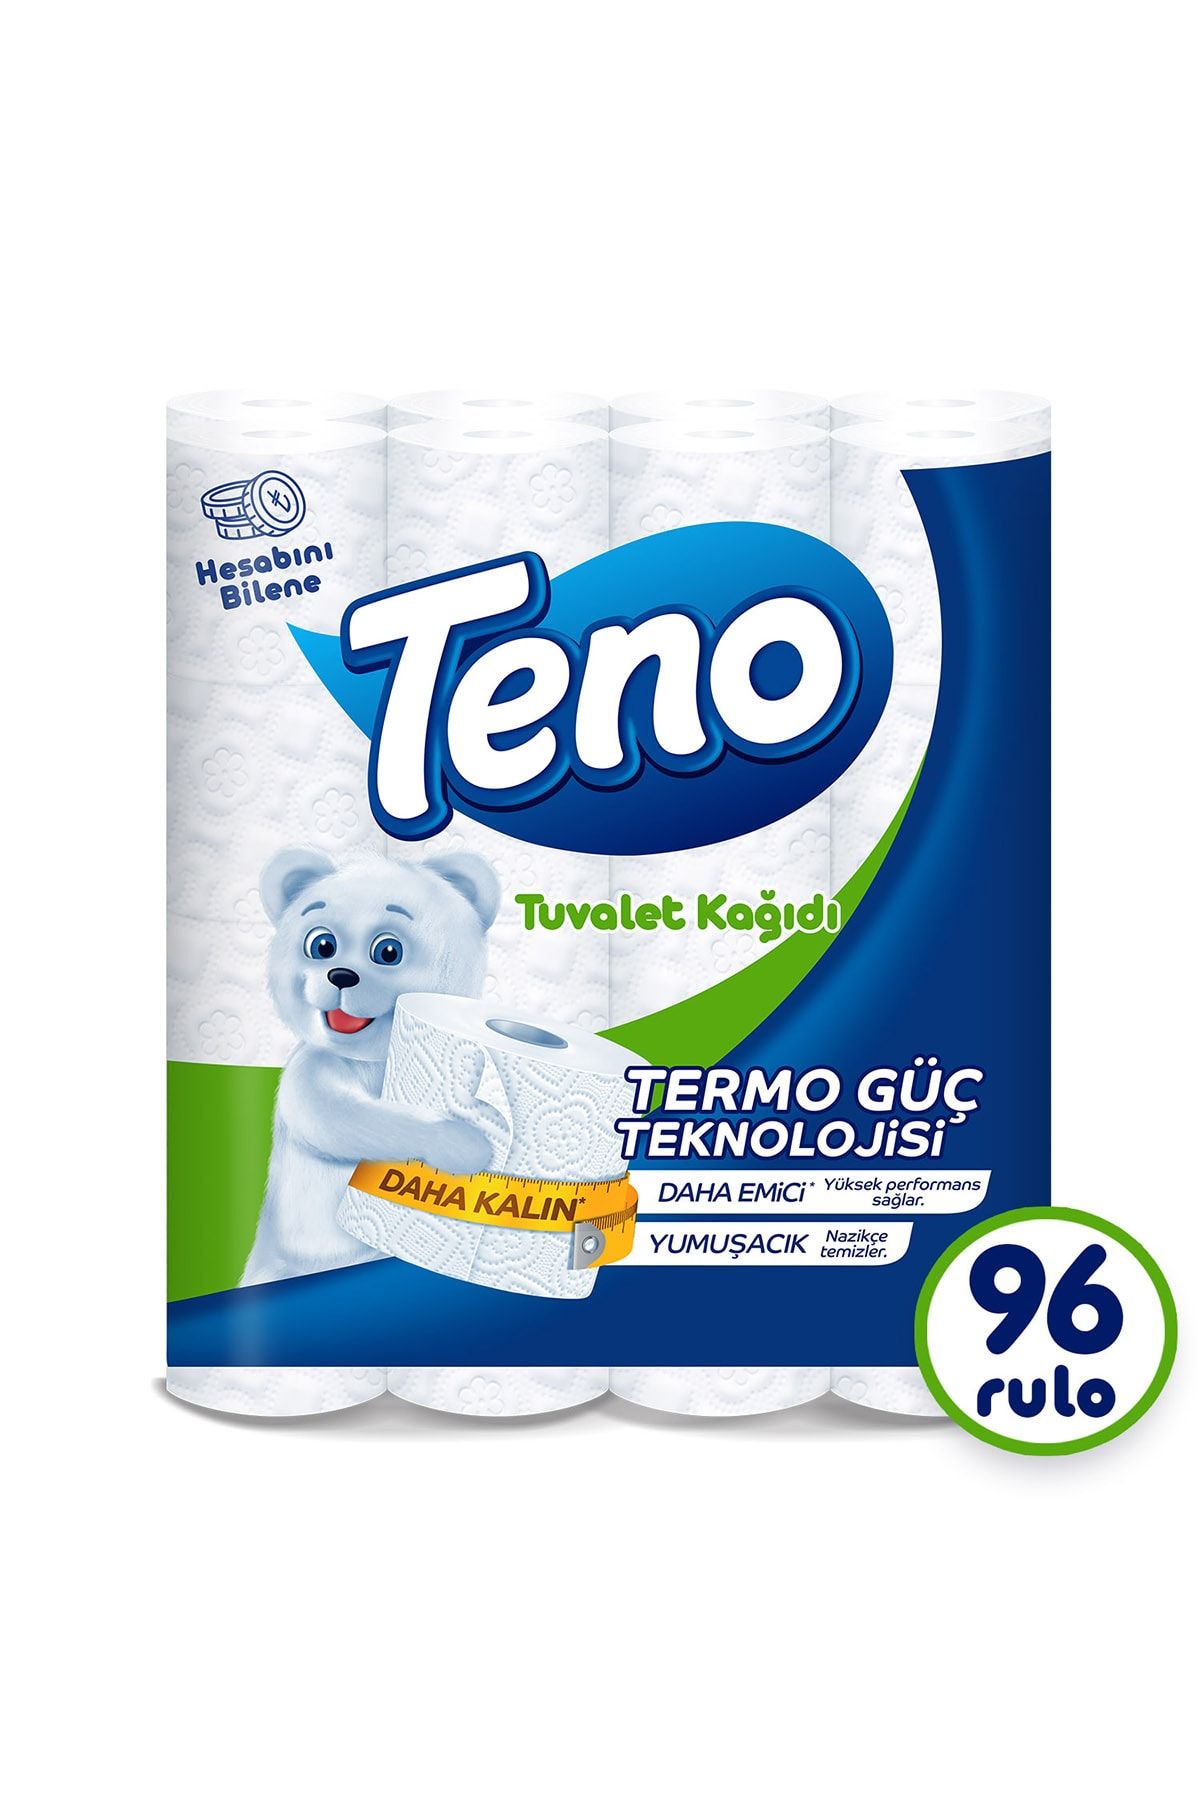 Teno Avantaj Paket Tuvalet Kağıdı 96 Rulo (32 Rulo X 3 Paket)